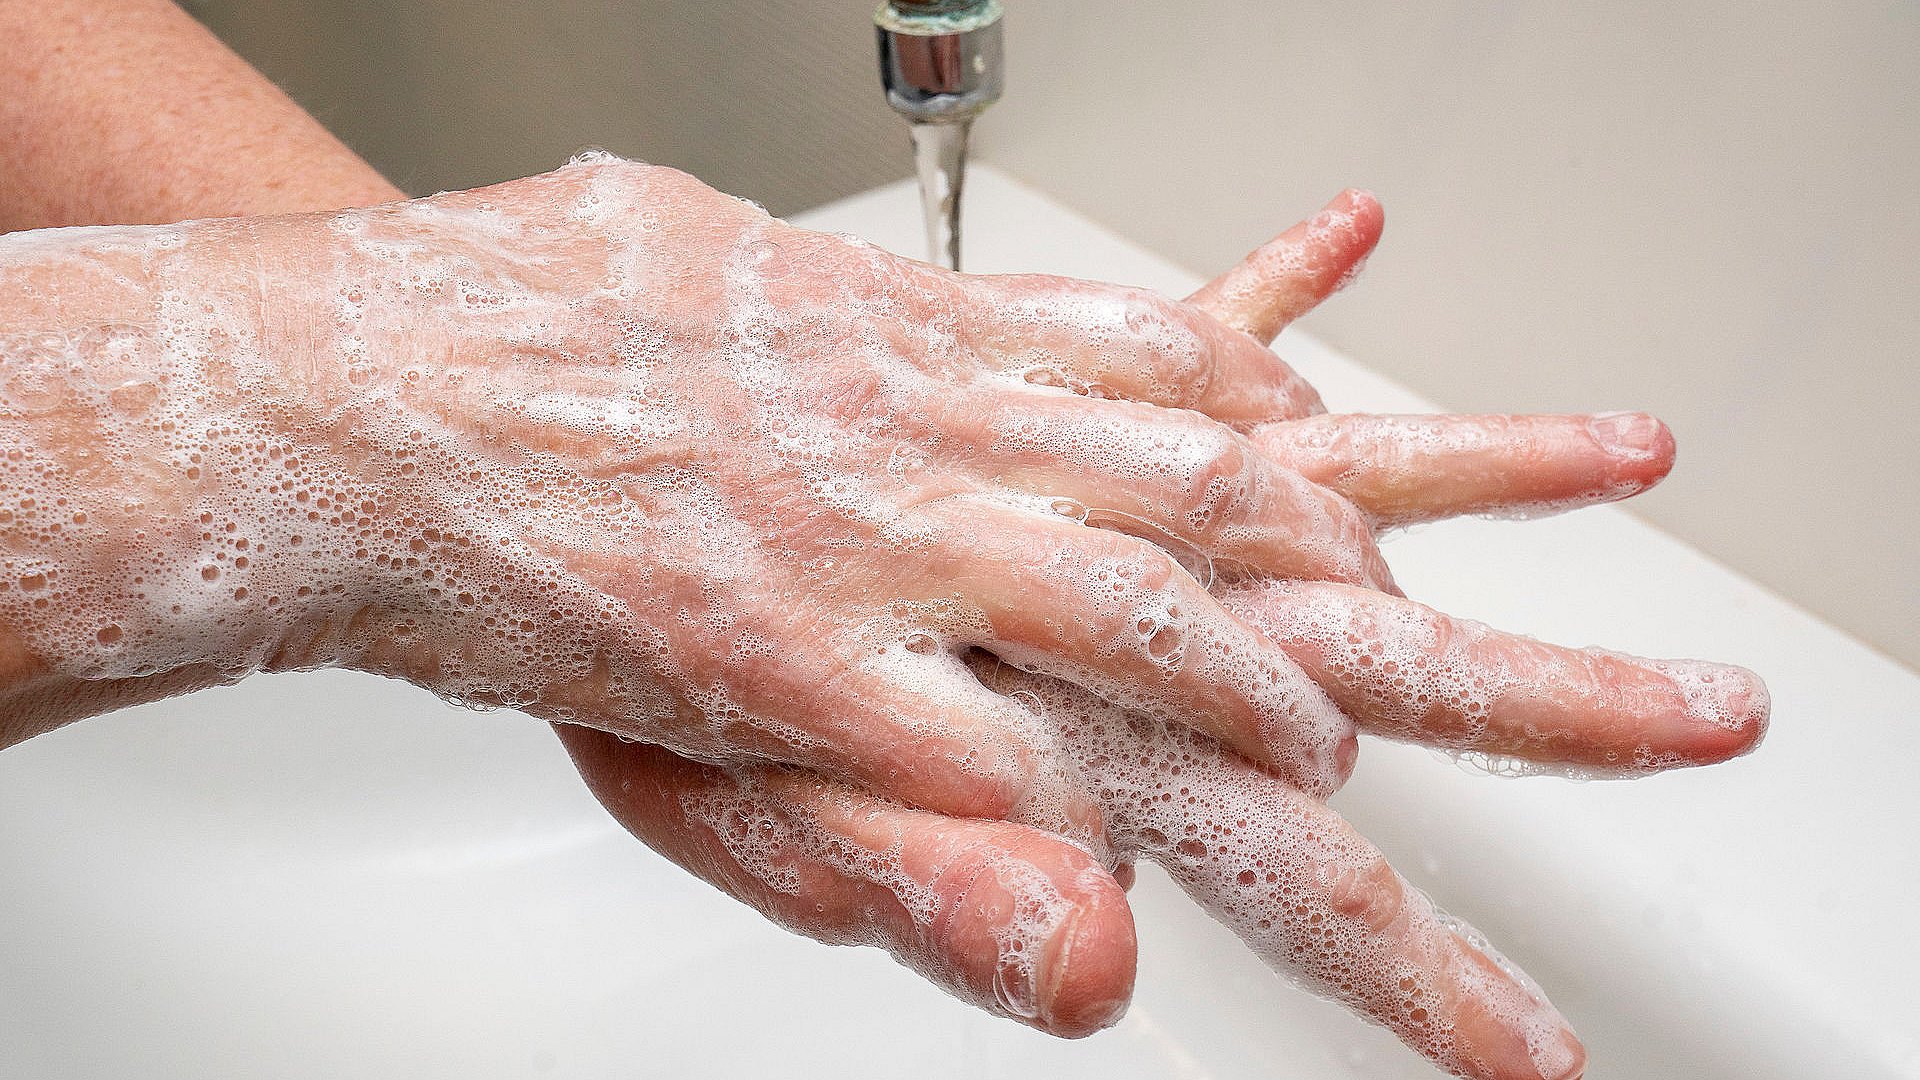 kontakt Stige brug Fokus på håndhygiejne har gjort håndvaske til en mangelvare | TV MIDTVEST